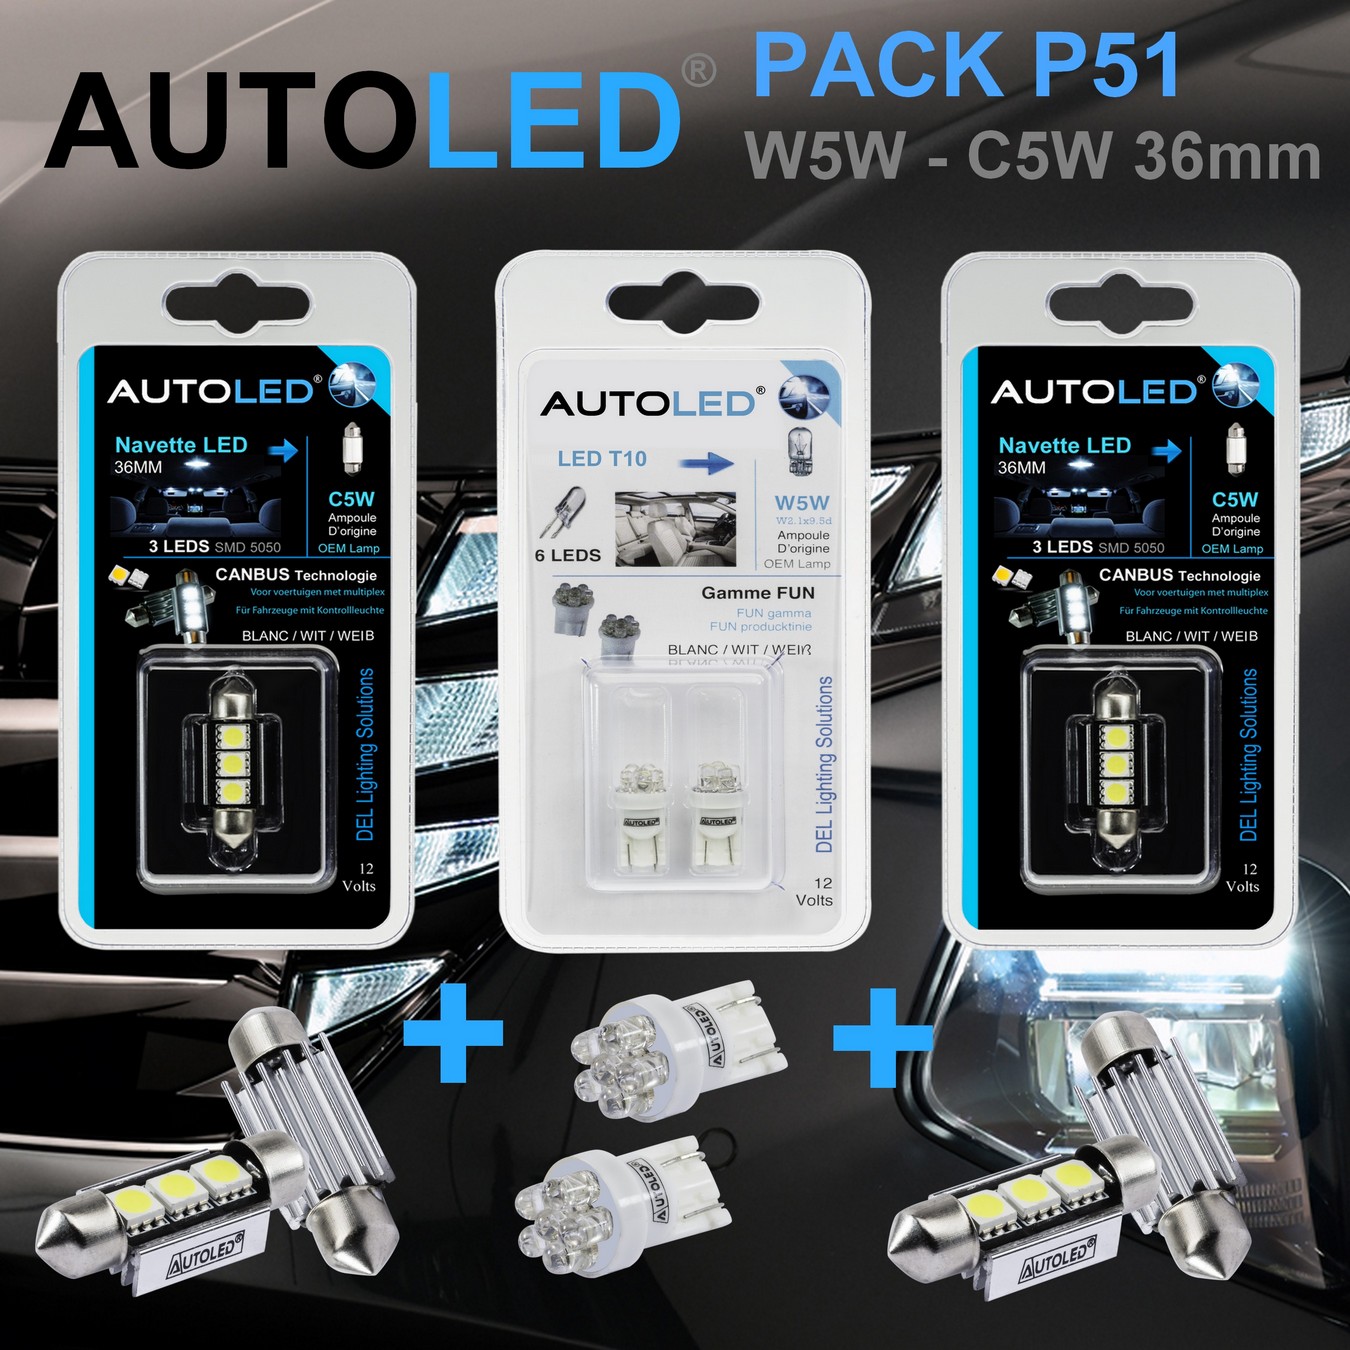 Pack-4-ampoules-led-blanc-eclairage-habitacle-plaque-plafonnier-boite -a gants-coffre-t10-6-leds-w5w-navette-c5w-c10w-36mm-canbus-3leds-blanc-eclairage-led-autoled-pack-p51.2